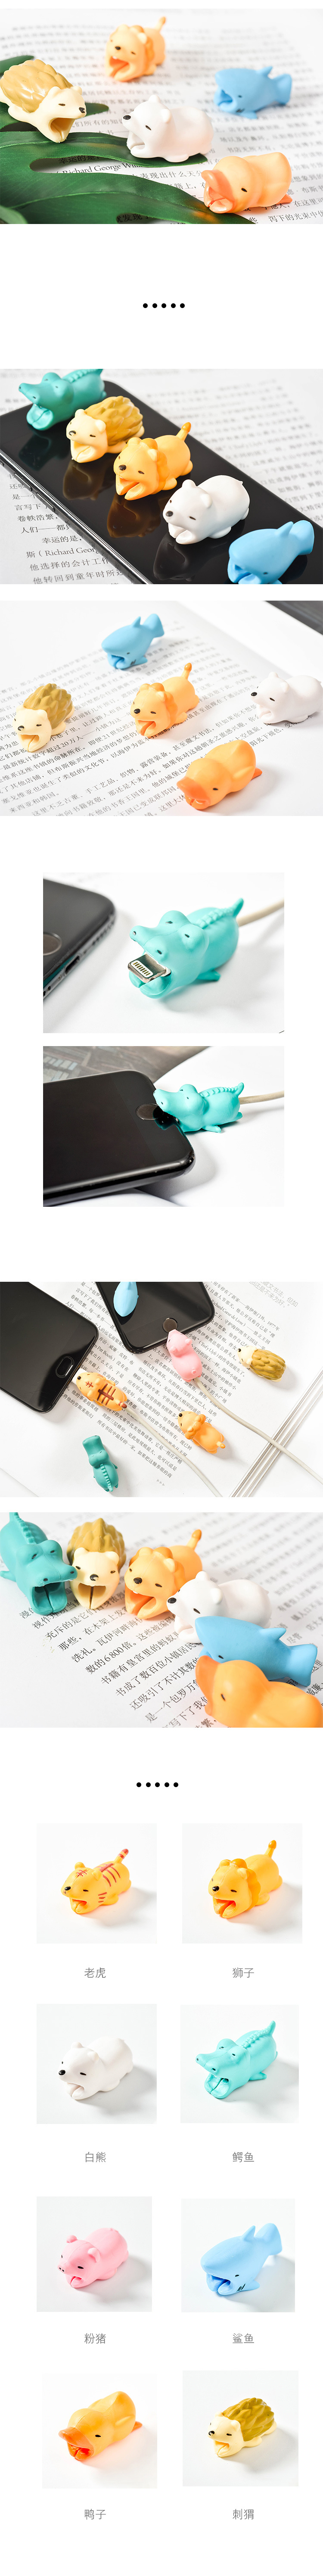 日式新款立體卡通蘋果數據線保護套可愛動物造型防折斷動物